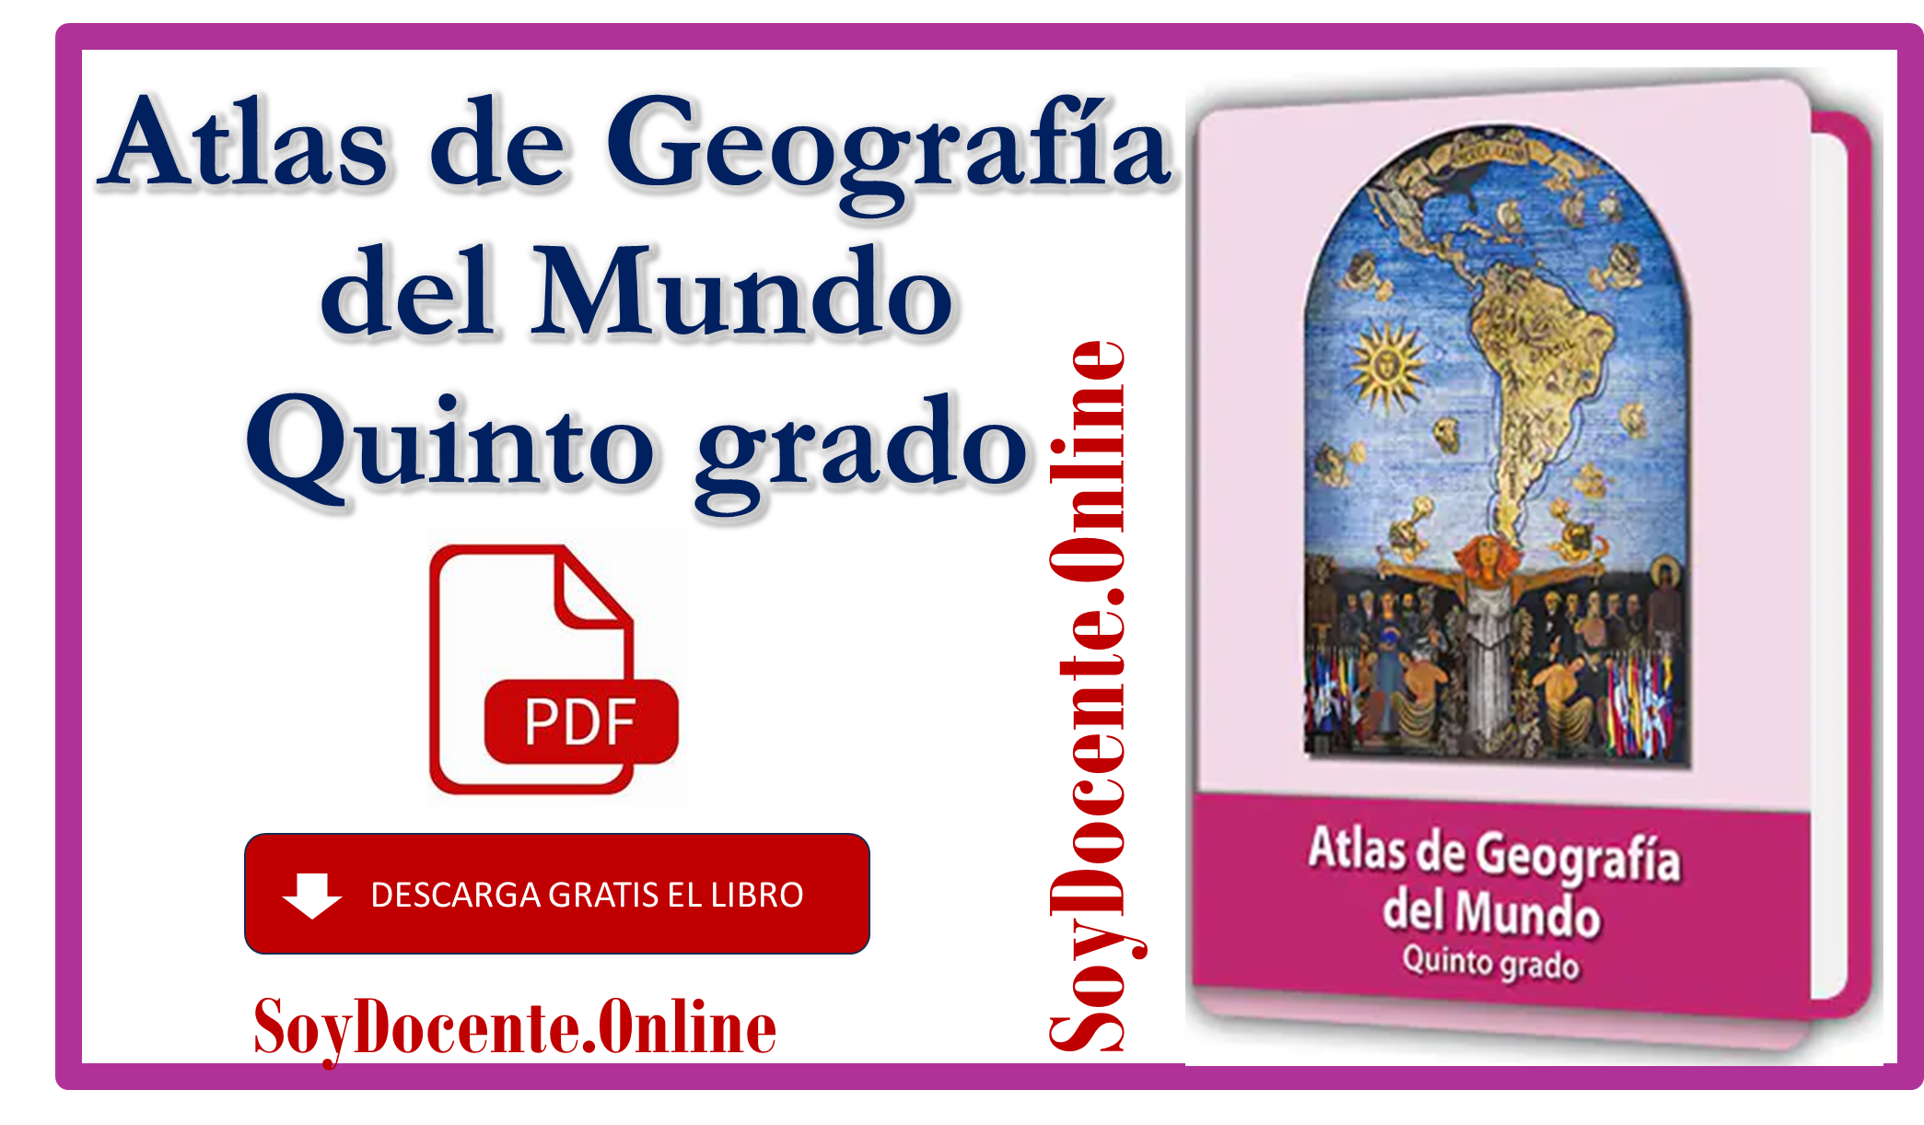 Libro de Atlas de Geografía del Mundo quinto grado de Primaria, obra de la SEP, distribuido por la CONALITEG. Descargar en formato de PDG, gratis.